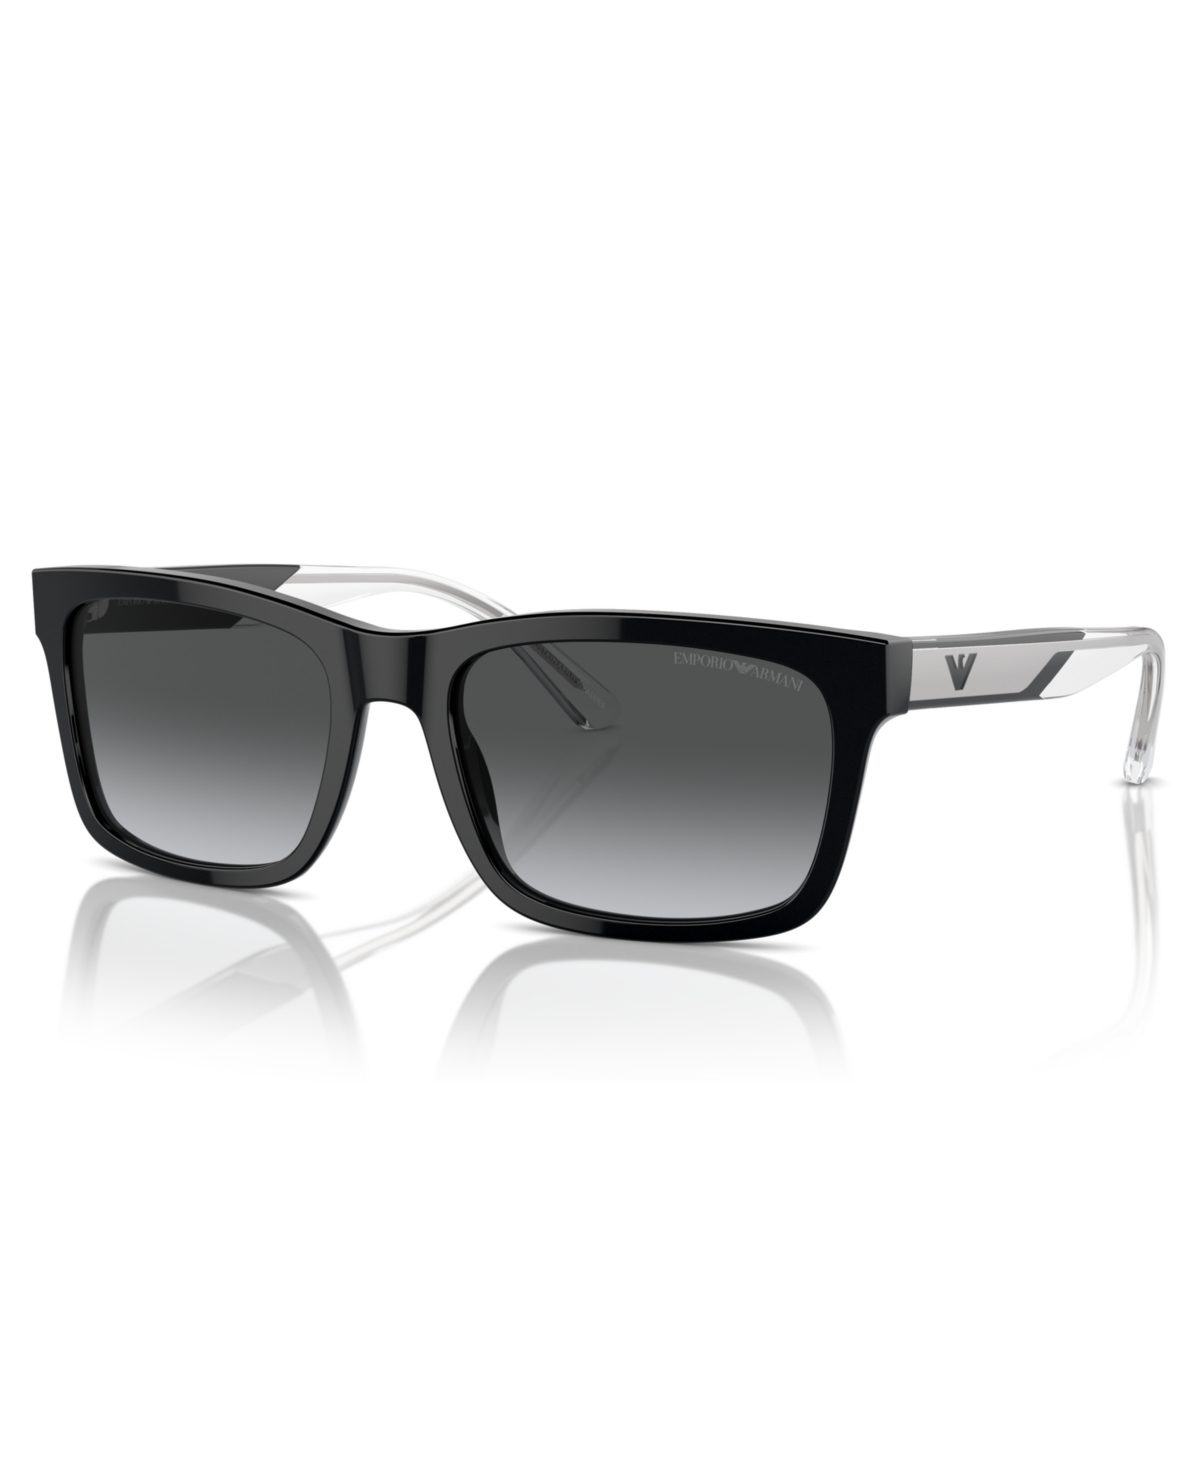 Emporio Armani Men's Polarized Sunglasses, Ea4224 In Shiny Black